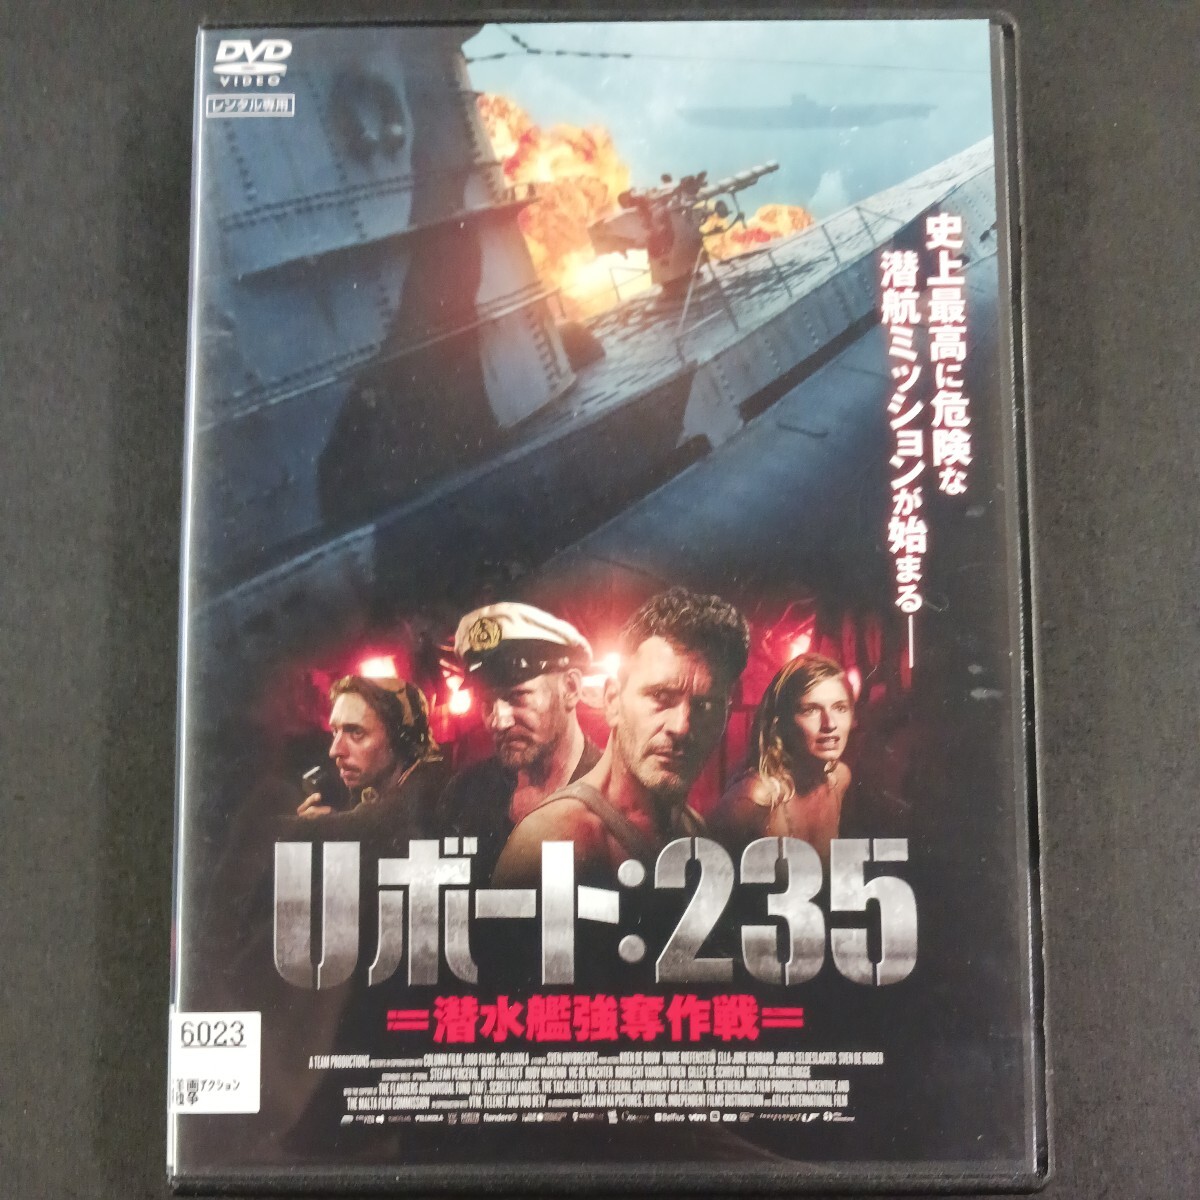 DVD_17】 Uボート:235 潜水艦強奪作戦 レンタル落ち DVD_画像1